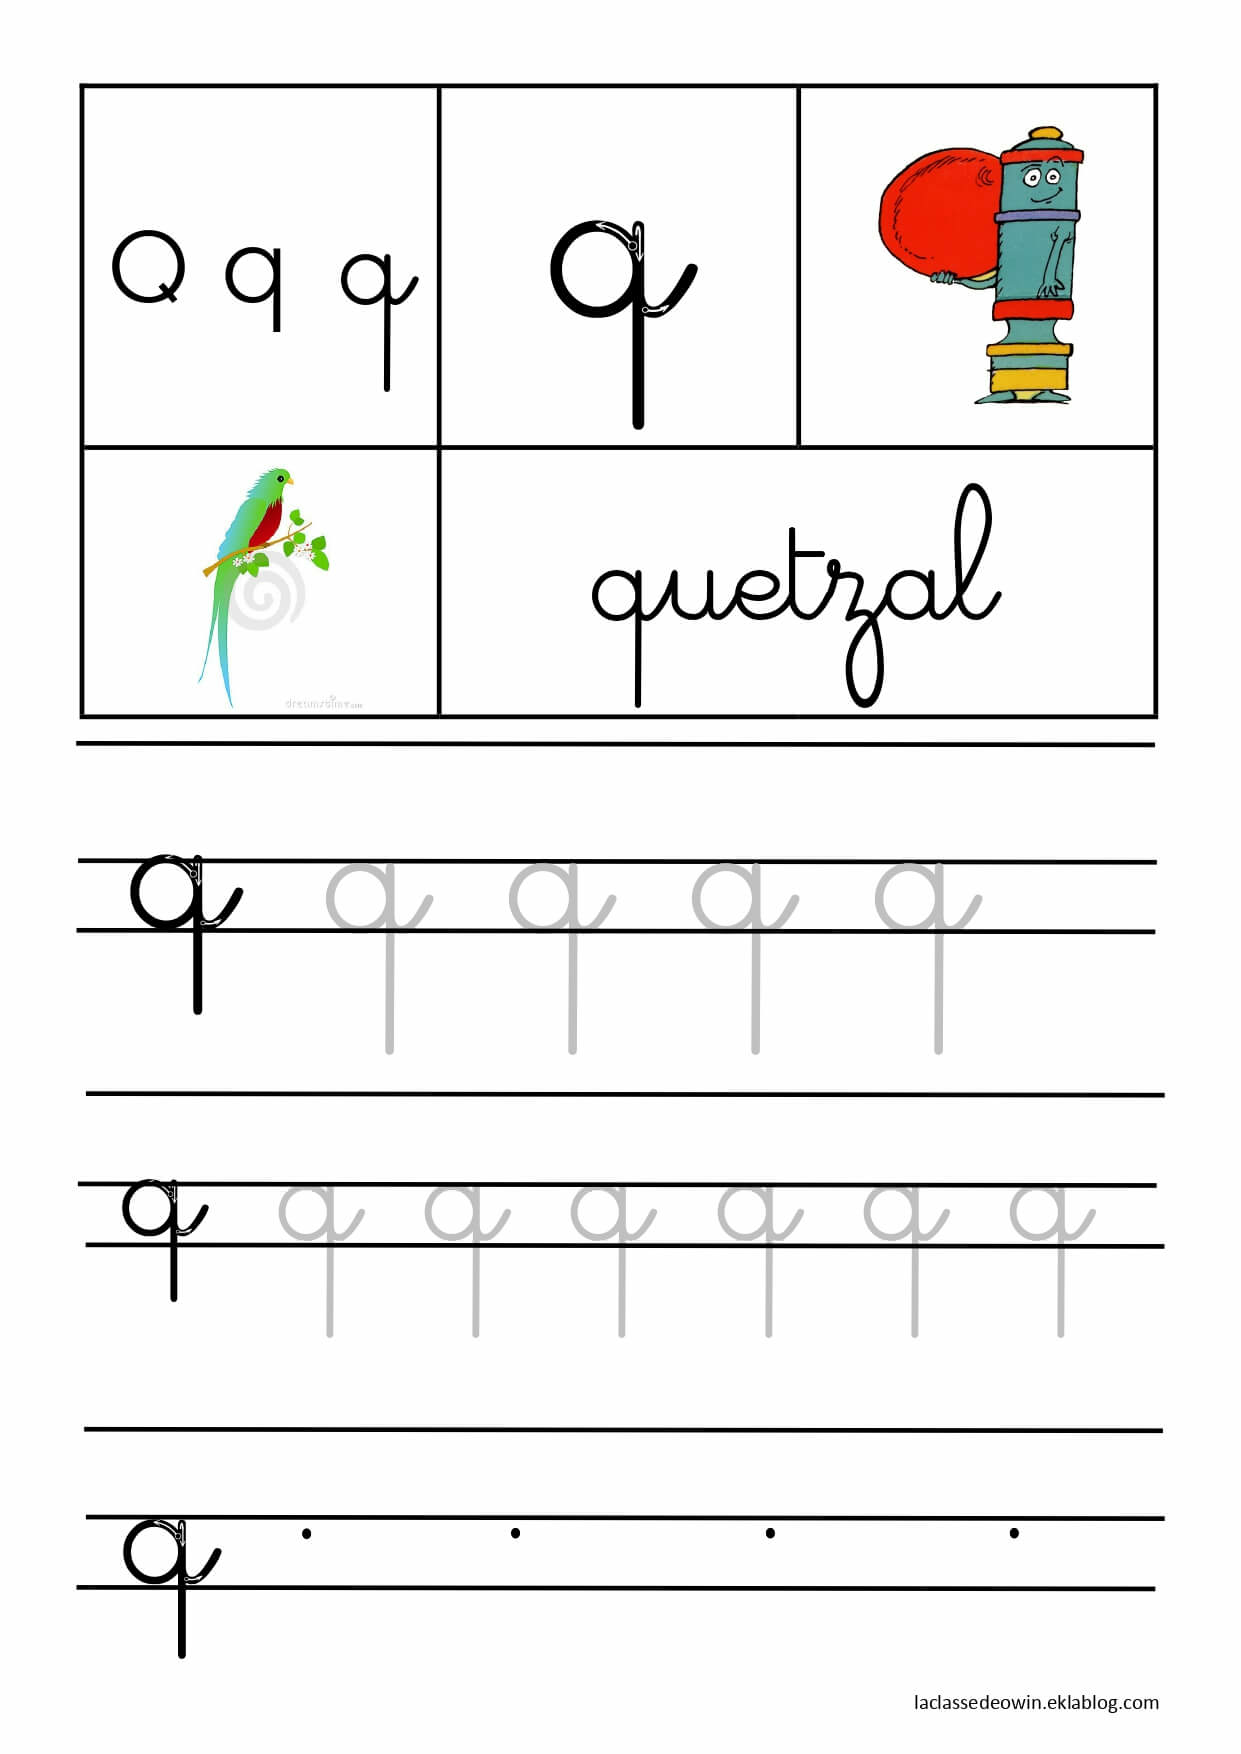   Lettre Q pour quetzal, écriture cursive GS 